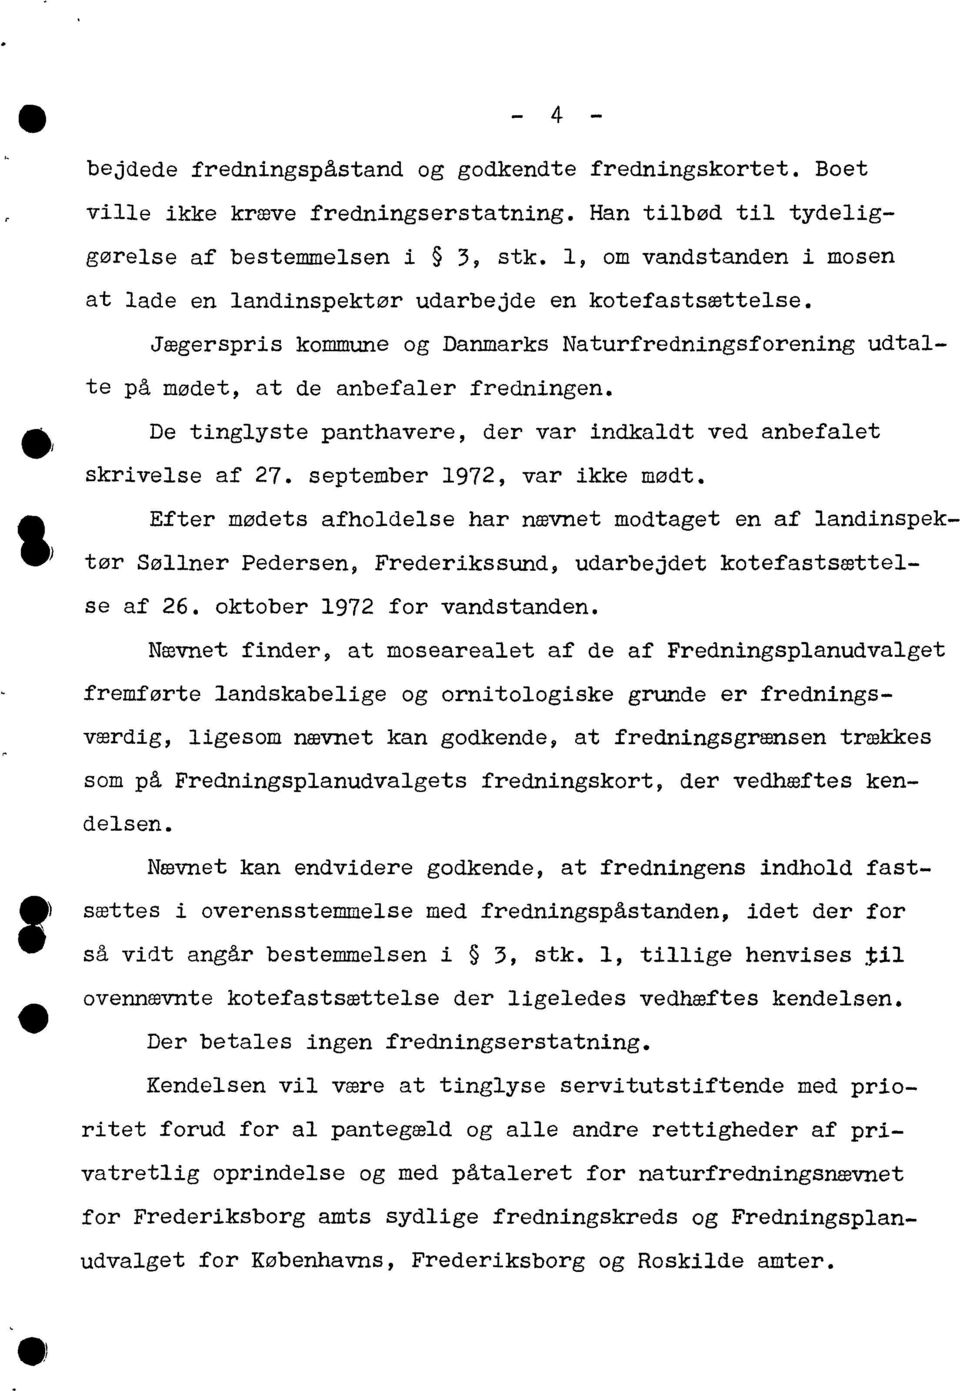 dlsn. D tinglyst panthavr dr var indkaldt vd anbfalt Eftr mødts afholdls har nævnt modtagt n af landinspktør Søllnr Pdrsn Frdrikssund udarbjdt kotfastsættls af 26. oktobr 1972 for vandstandn.